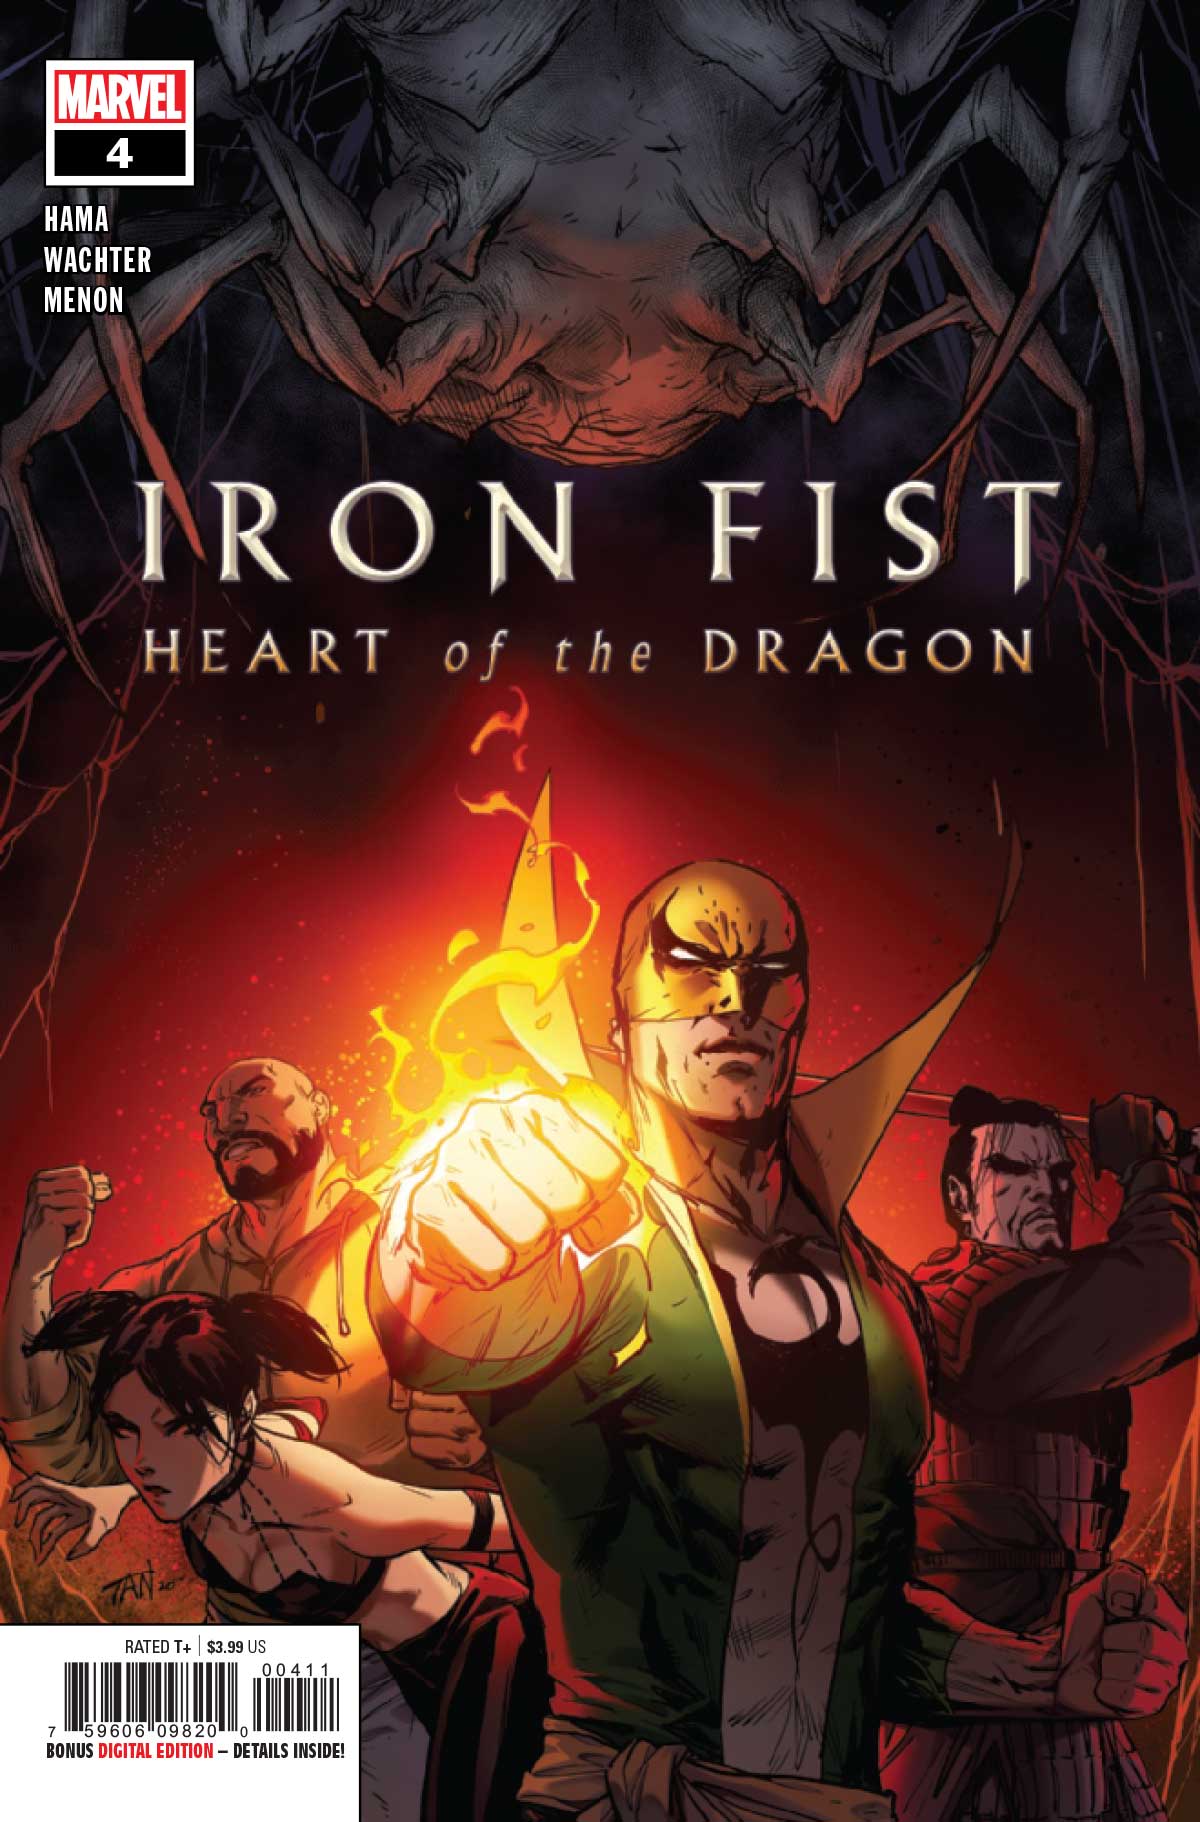 Iron Fist #13